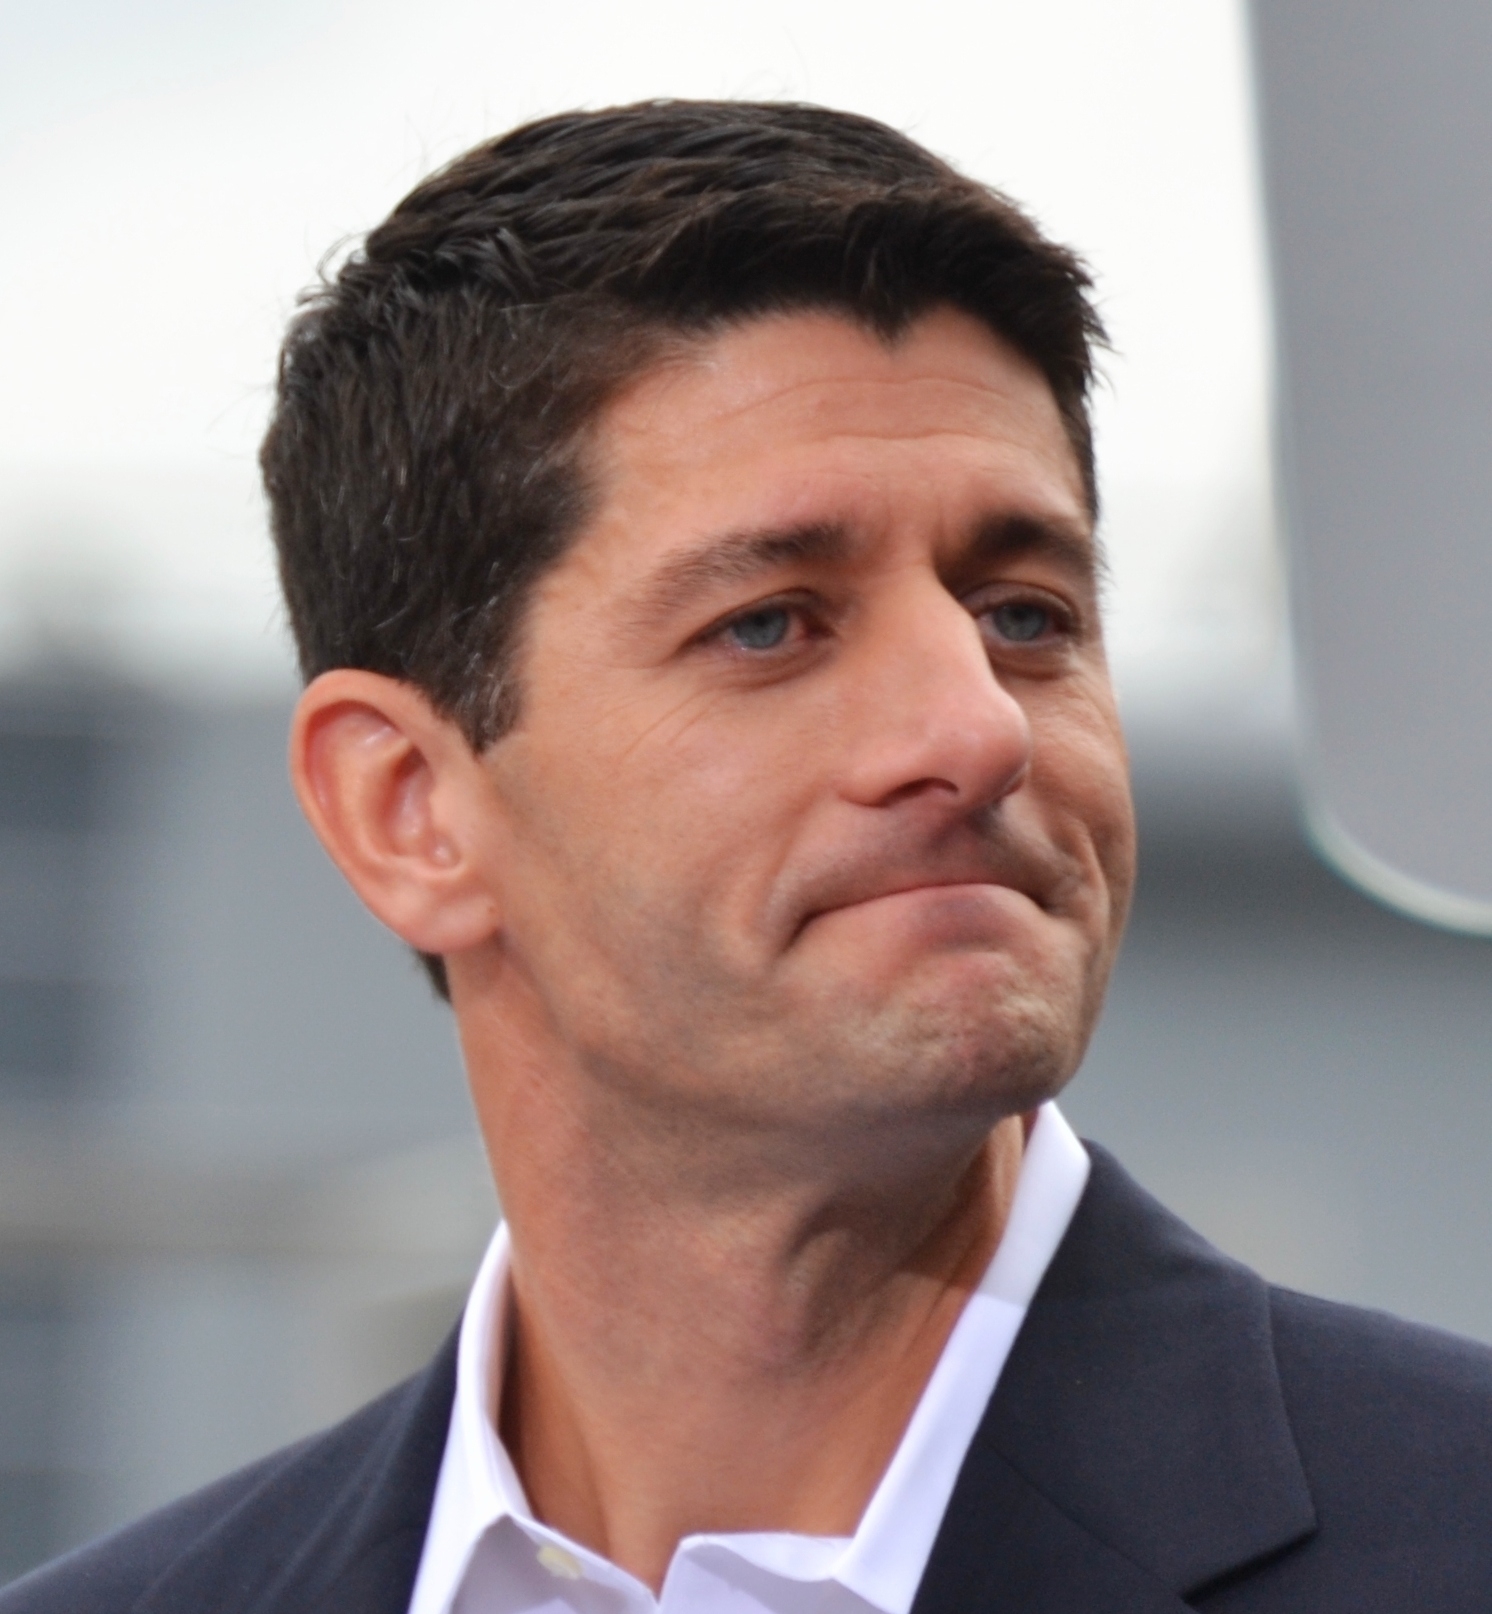 House Speaker Paul Ryan Calls For Pause In Syrian Refugee Program